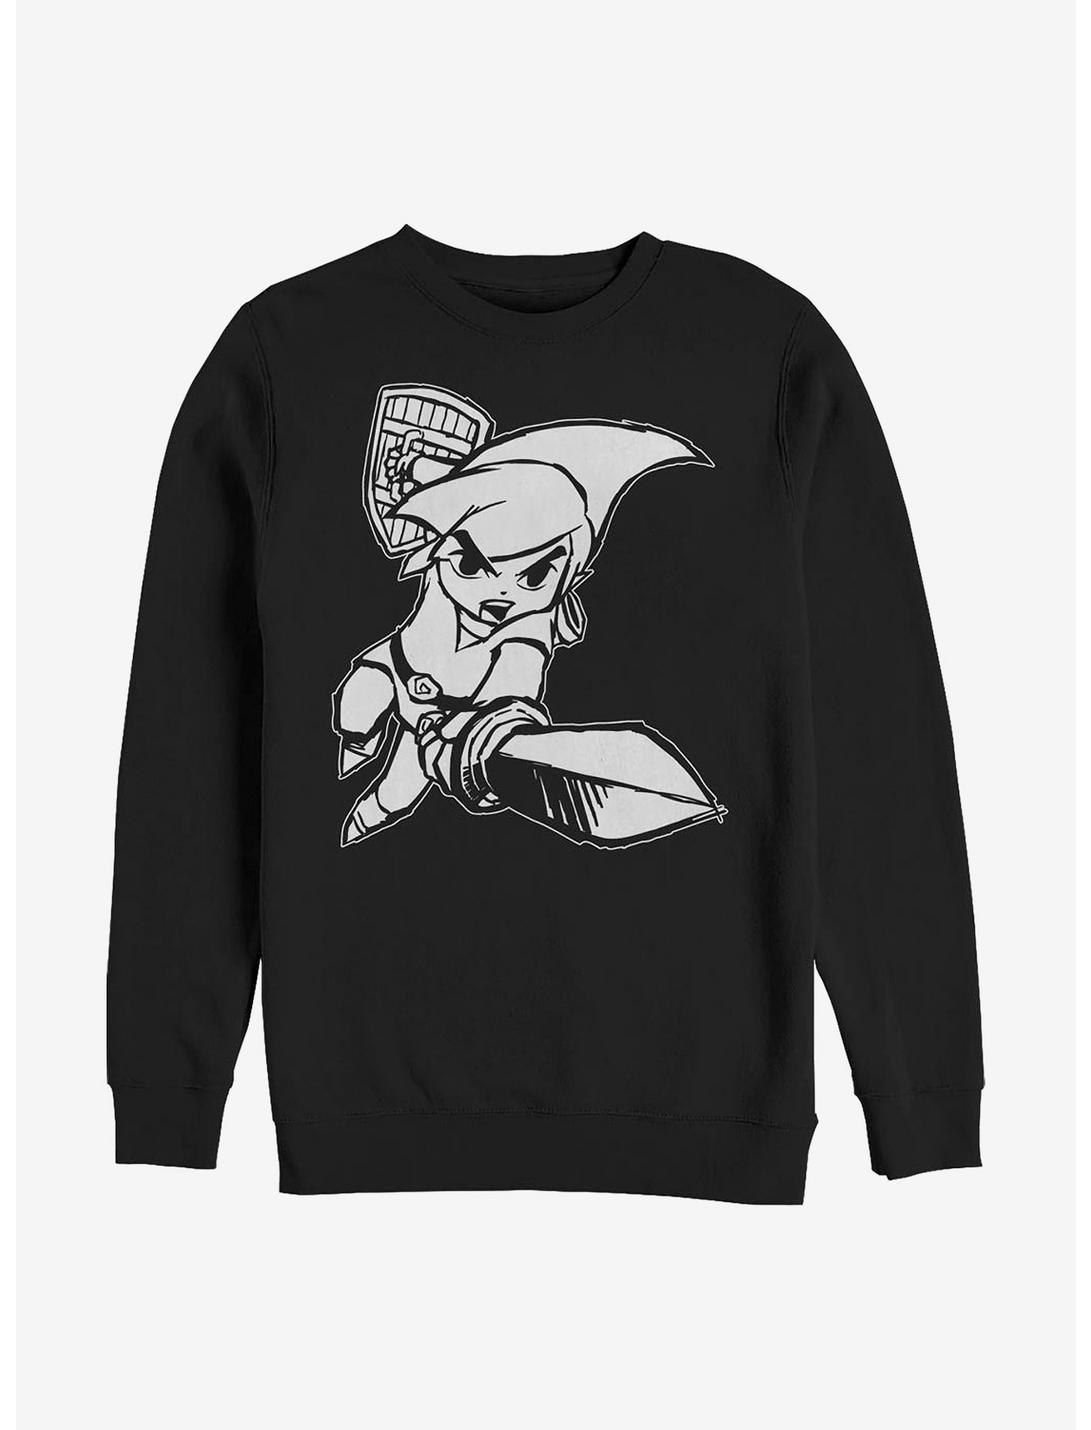 Nintendo Zelda The Wind Waker Crew Sweatshirt, BLACK, hi-res